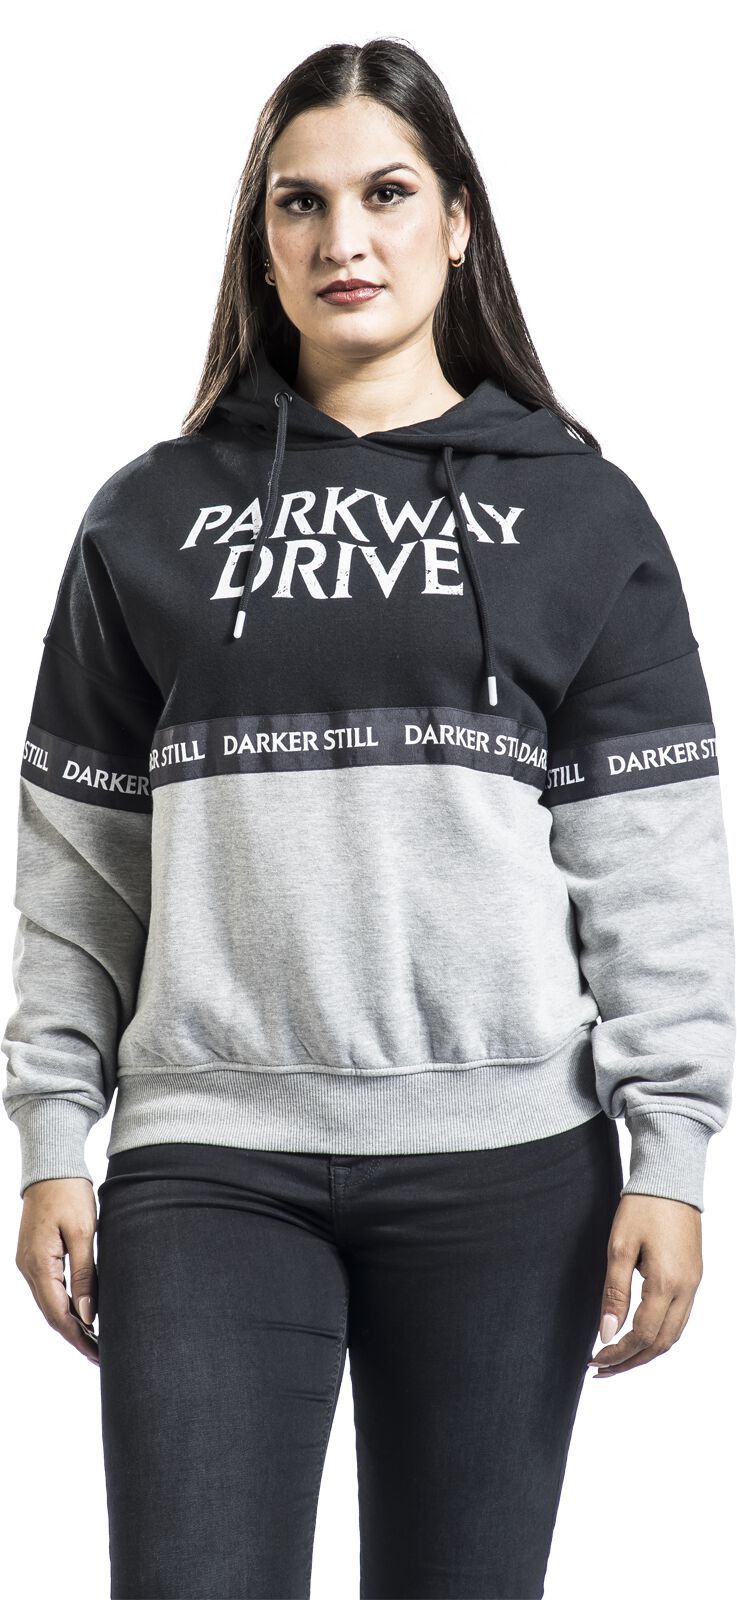 Parkway Drive Kapuzenpullover - EMP Signature Collection - S bis XL - für Damen - Größe L - hellgrau/schwarz  - EMP exklusives Merchandise!